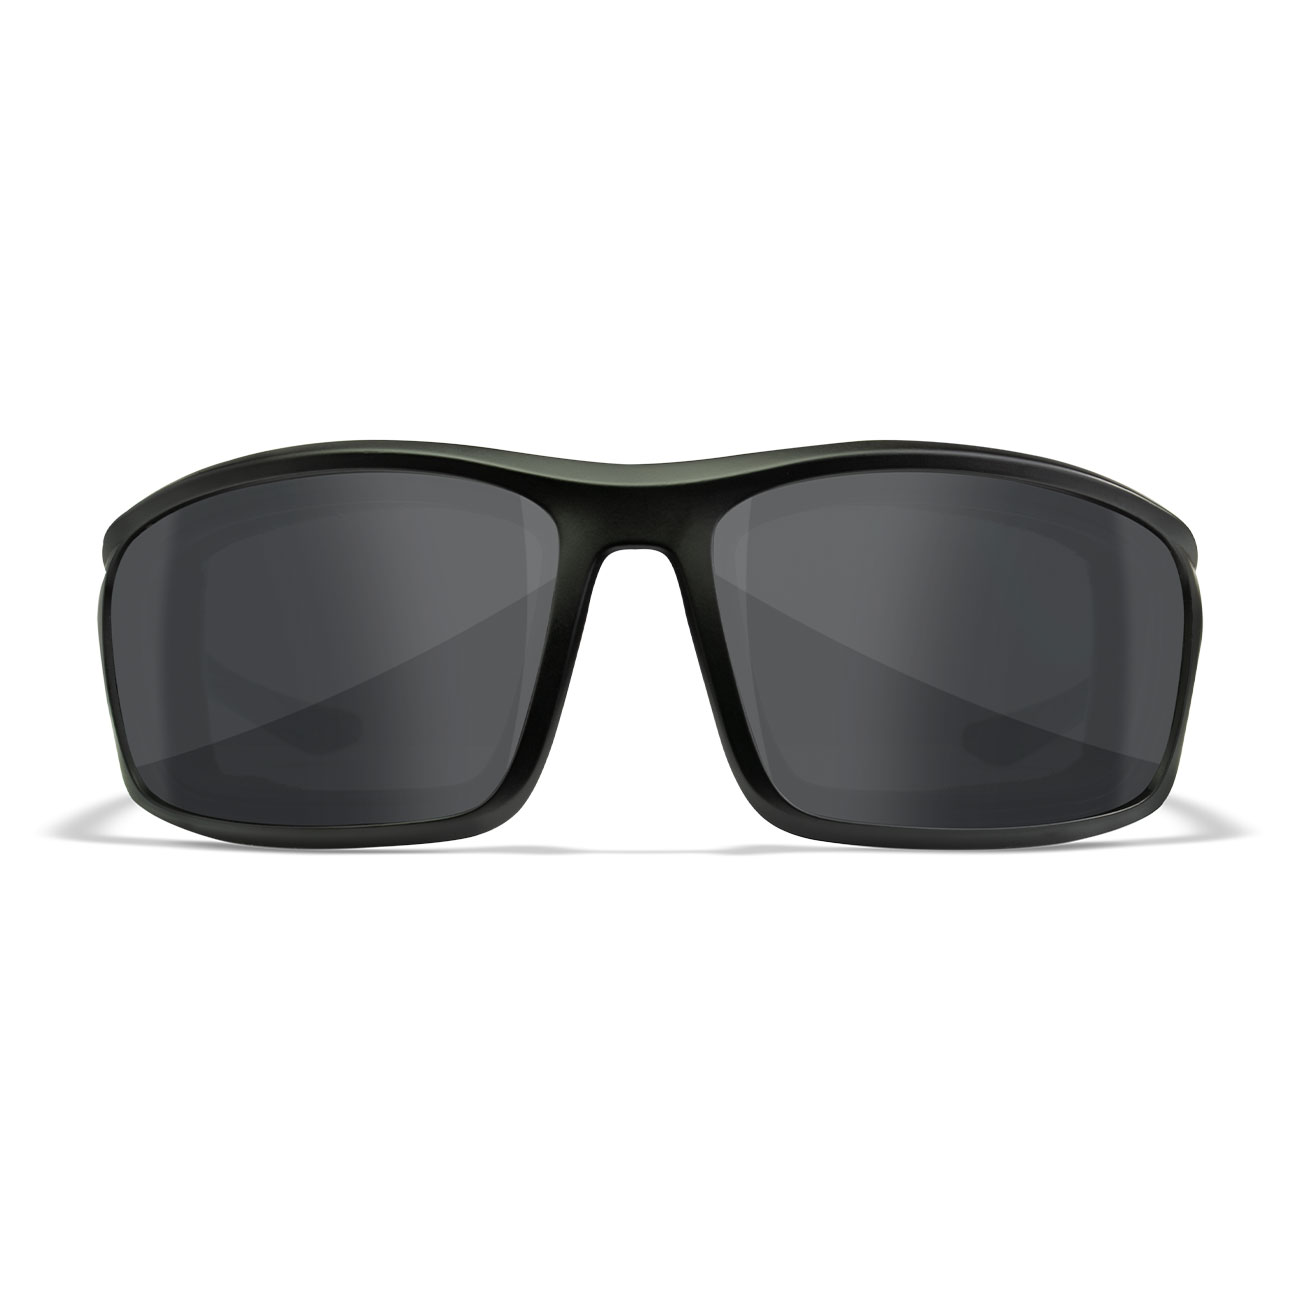 Wiley X Sonnenbrille Grid matt schwarz Glser grau inkl. Brillenetui und Facial Cavity Dichtung Bild 1